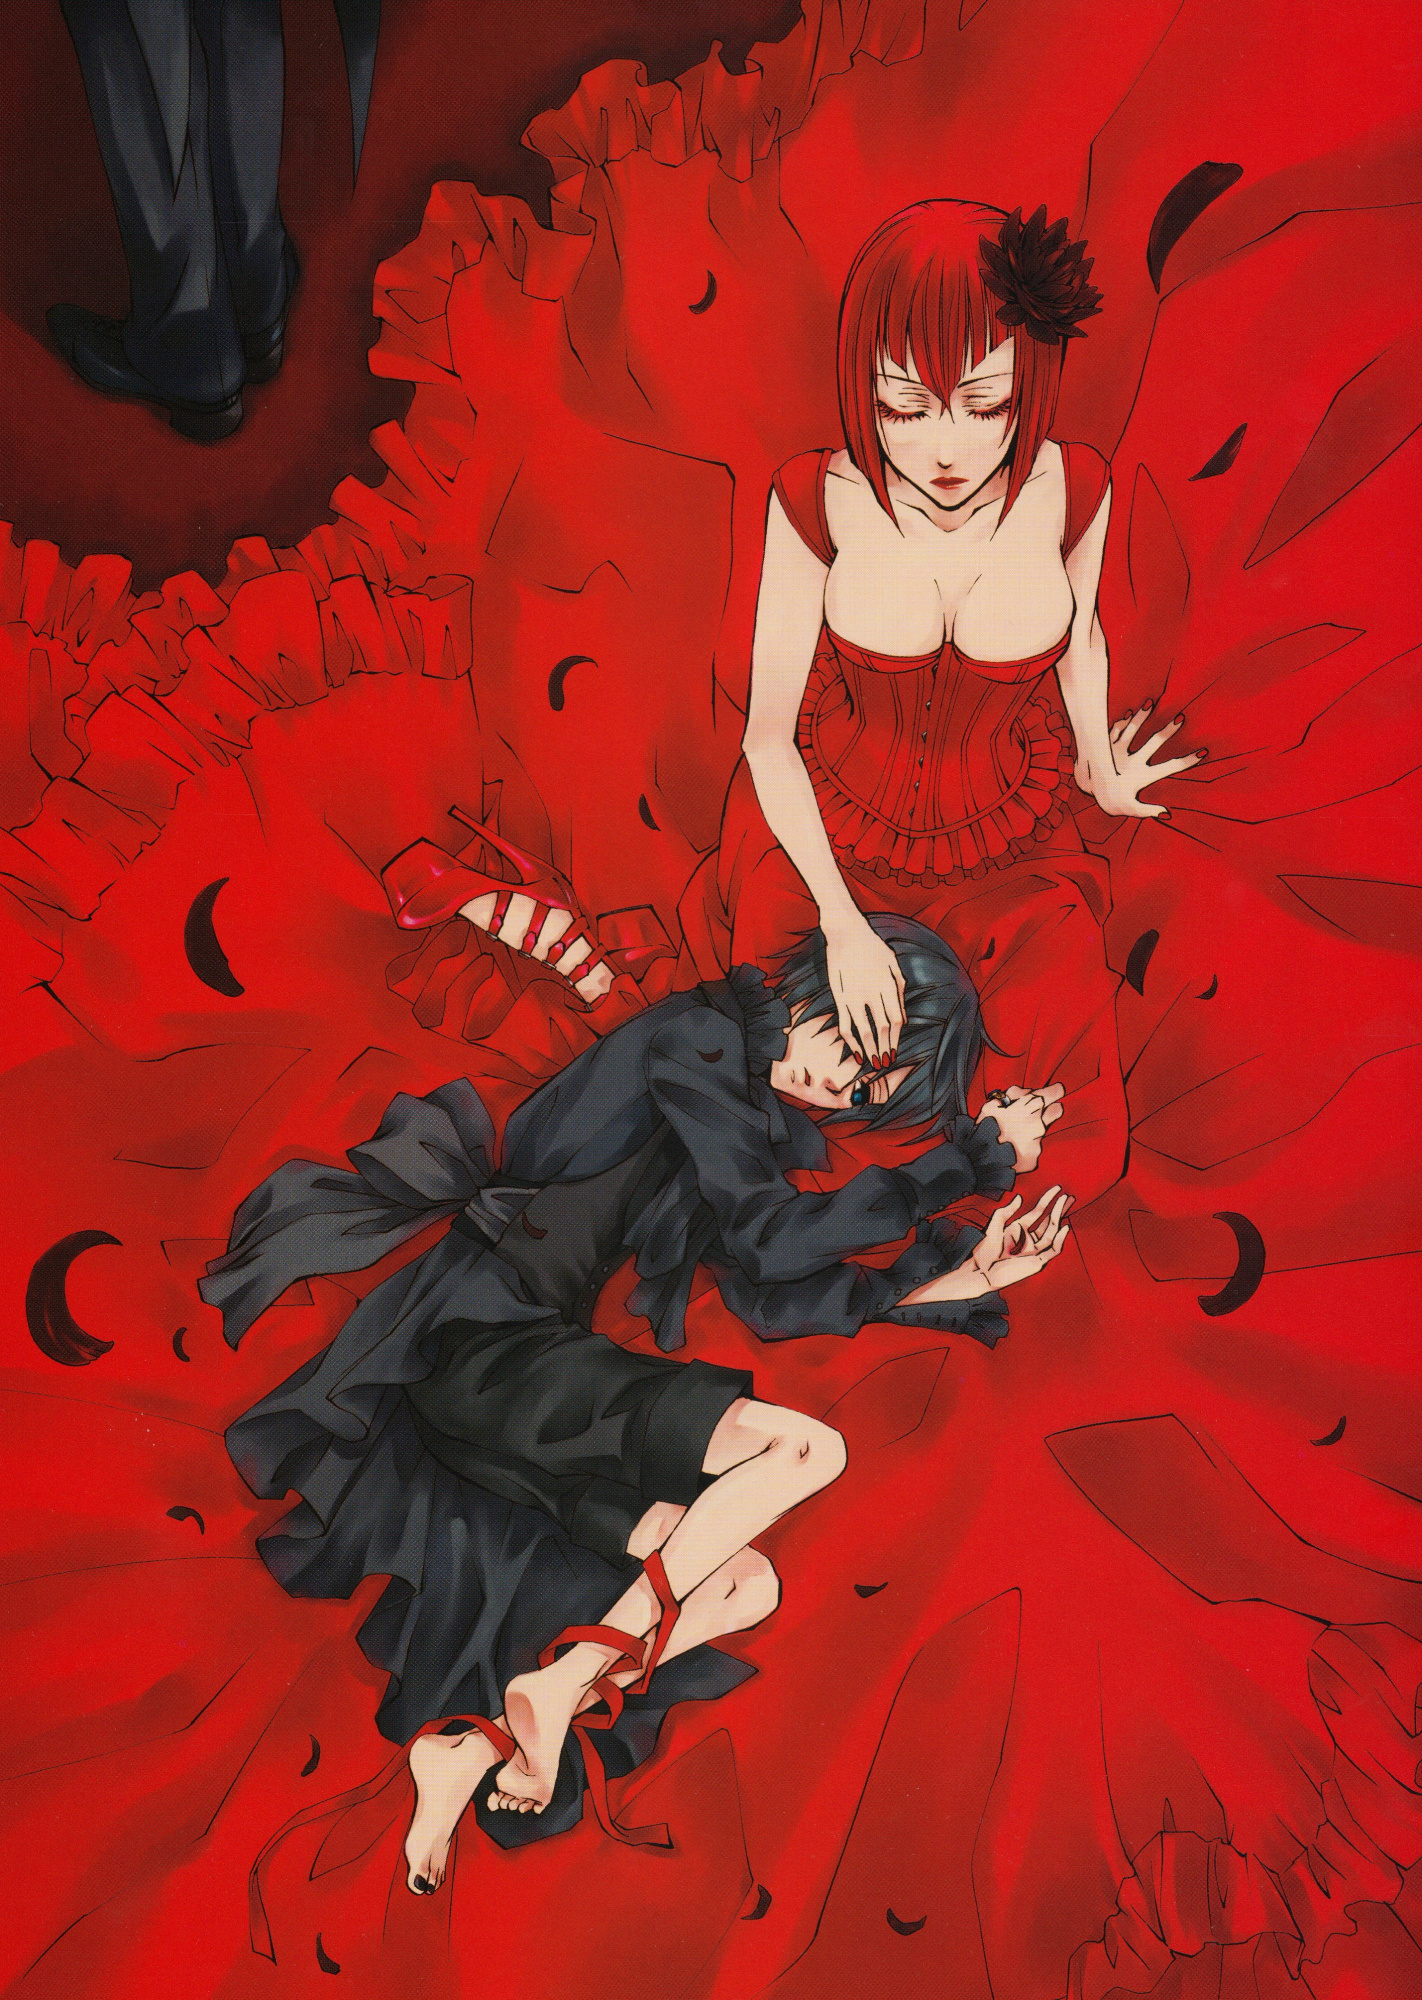 Фото Ciel Phantomhive лежит головой на коленях у madame Red, аниме Kuroshitsuji / Темный дворецкий, art by Yona Toboso